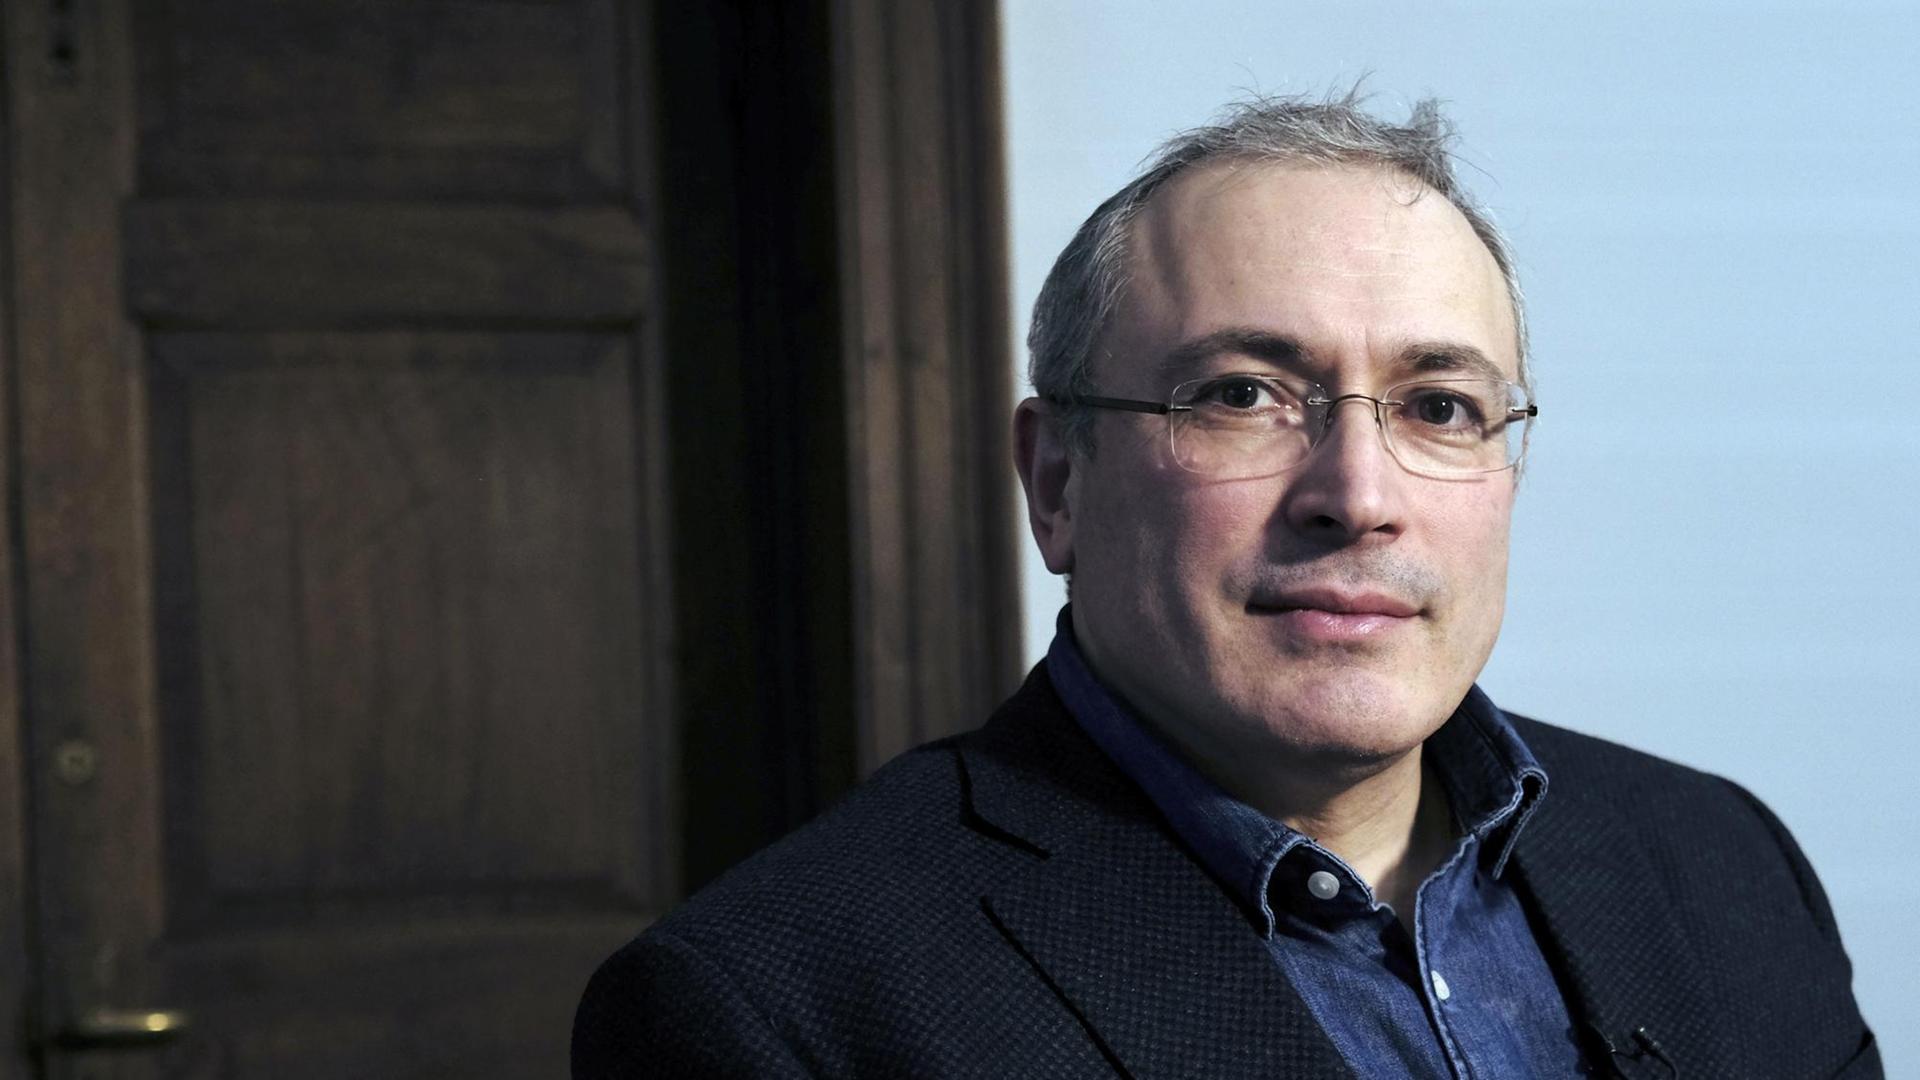 Der im Exil lebende Kreml-Kritiker Michail Chodorkowski